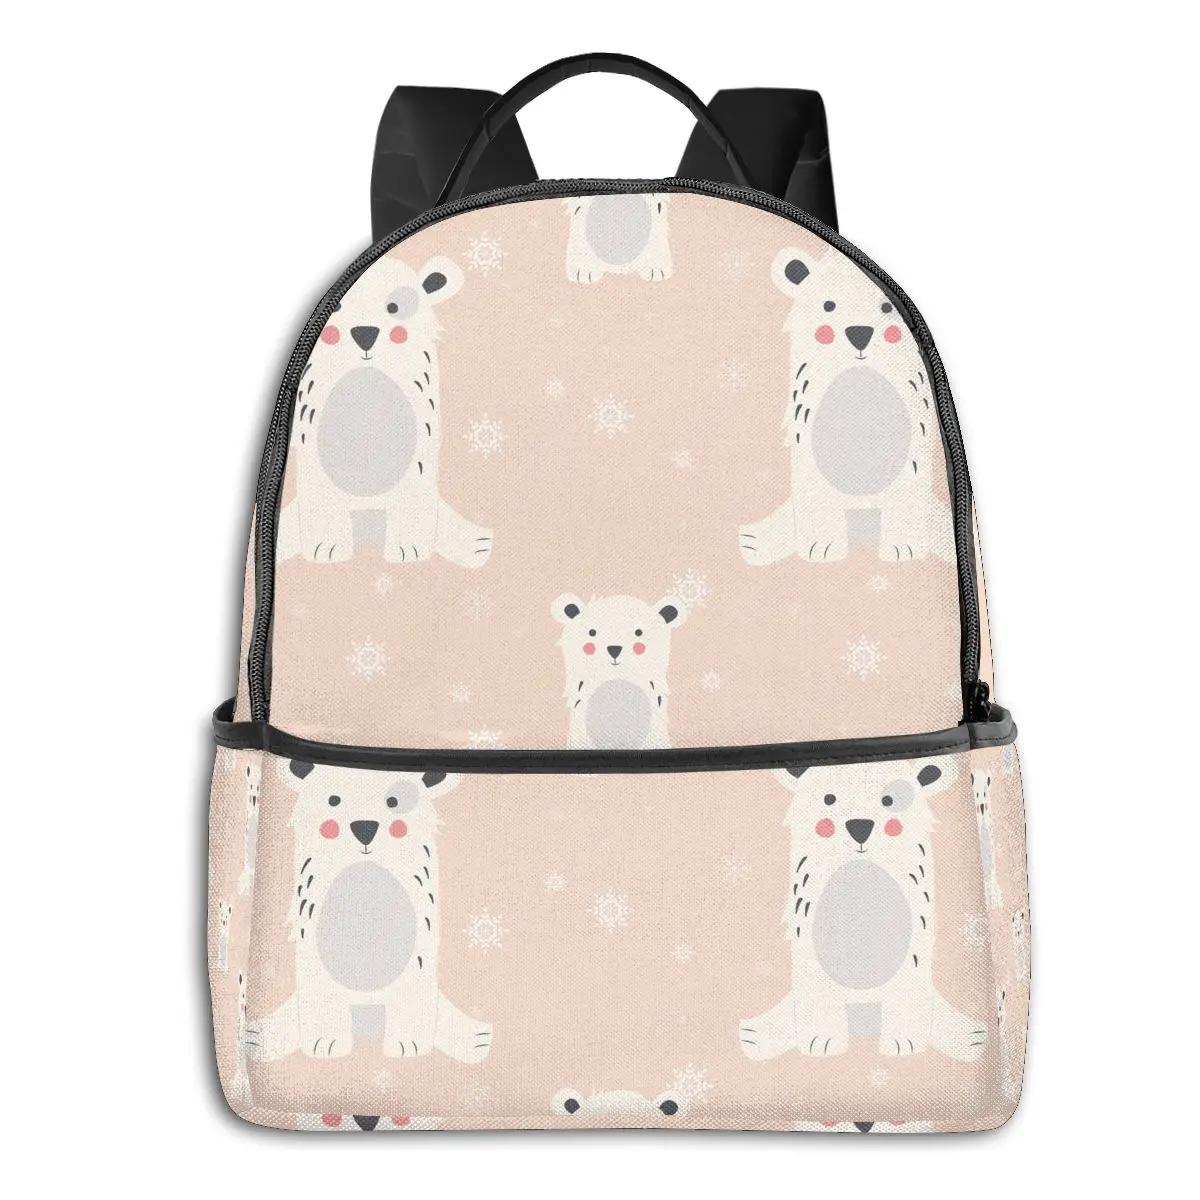 

Студенческий рюкзак с мультипликационным принтом медведя, школьная сумка, рюкзак в студенческом стиле, дорожный рюкзак